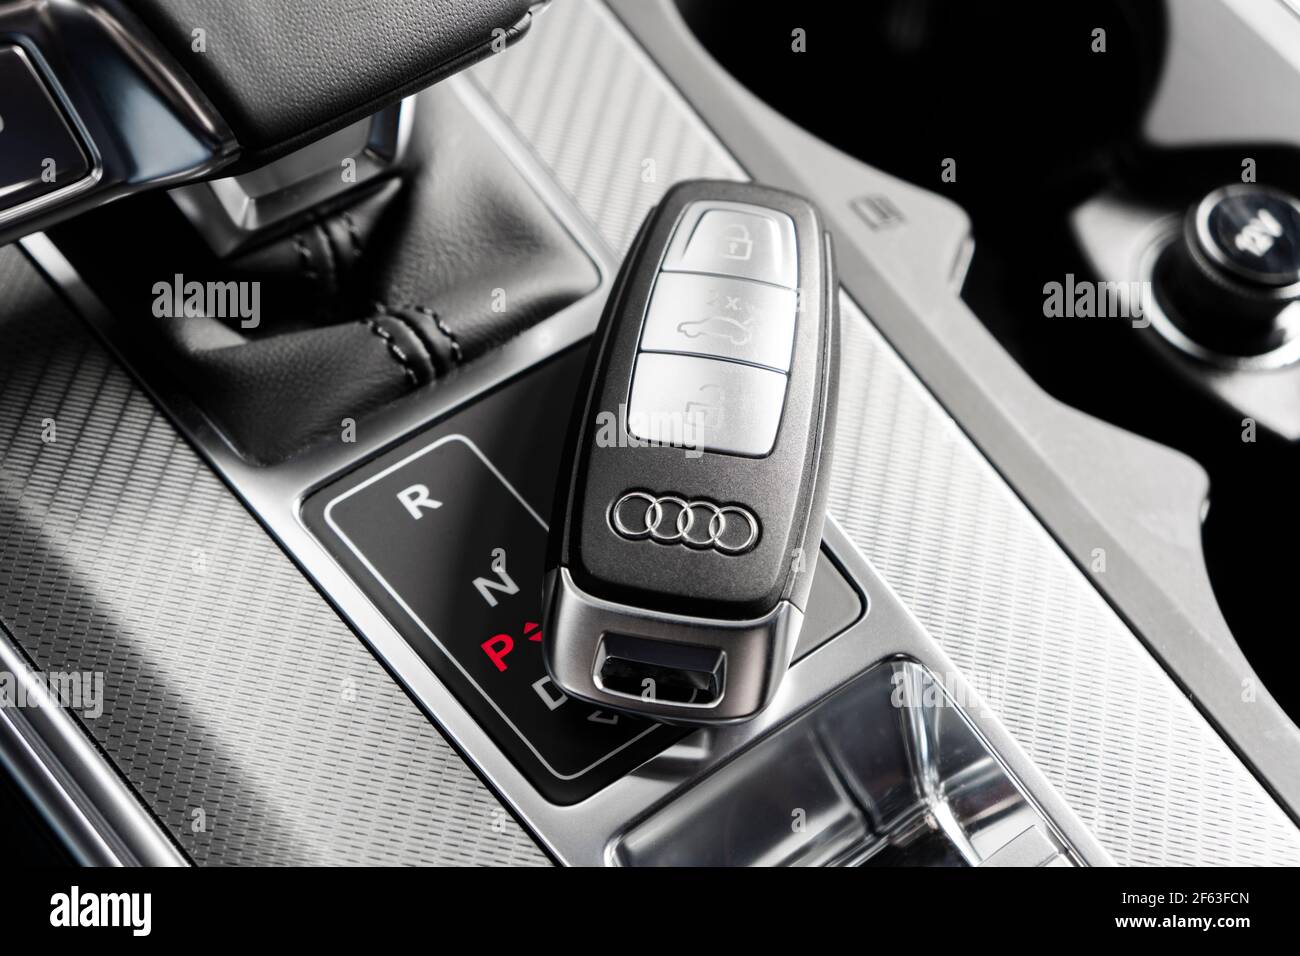 Sankt-Petersburg, Russie, 25 mars 2021 : gros plan des clés de voiture Audi A6 dans un intérieur en cuir noir d'une voiture moderne. Détails de l'intérieur de l'Audi A6 S-Line. Banque D'Images